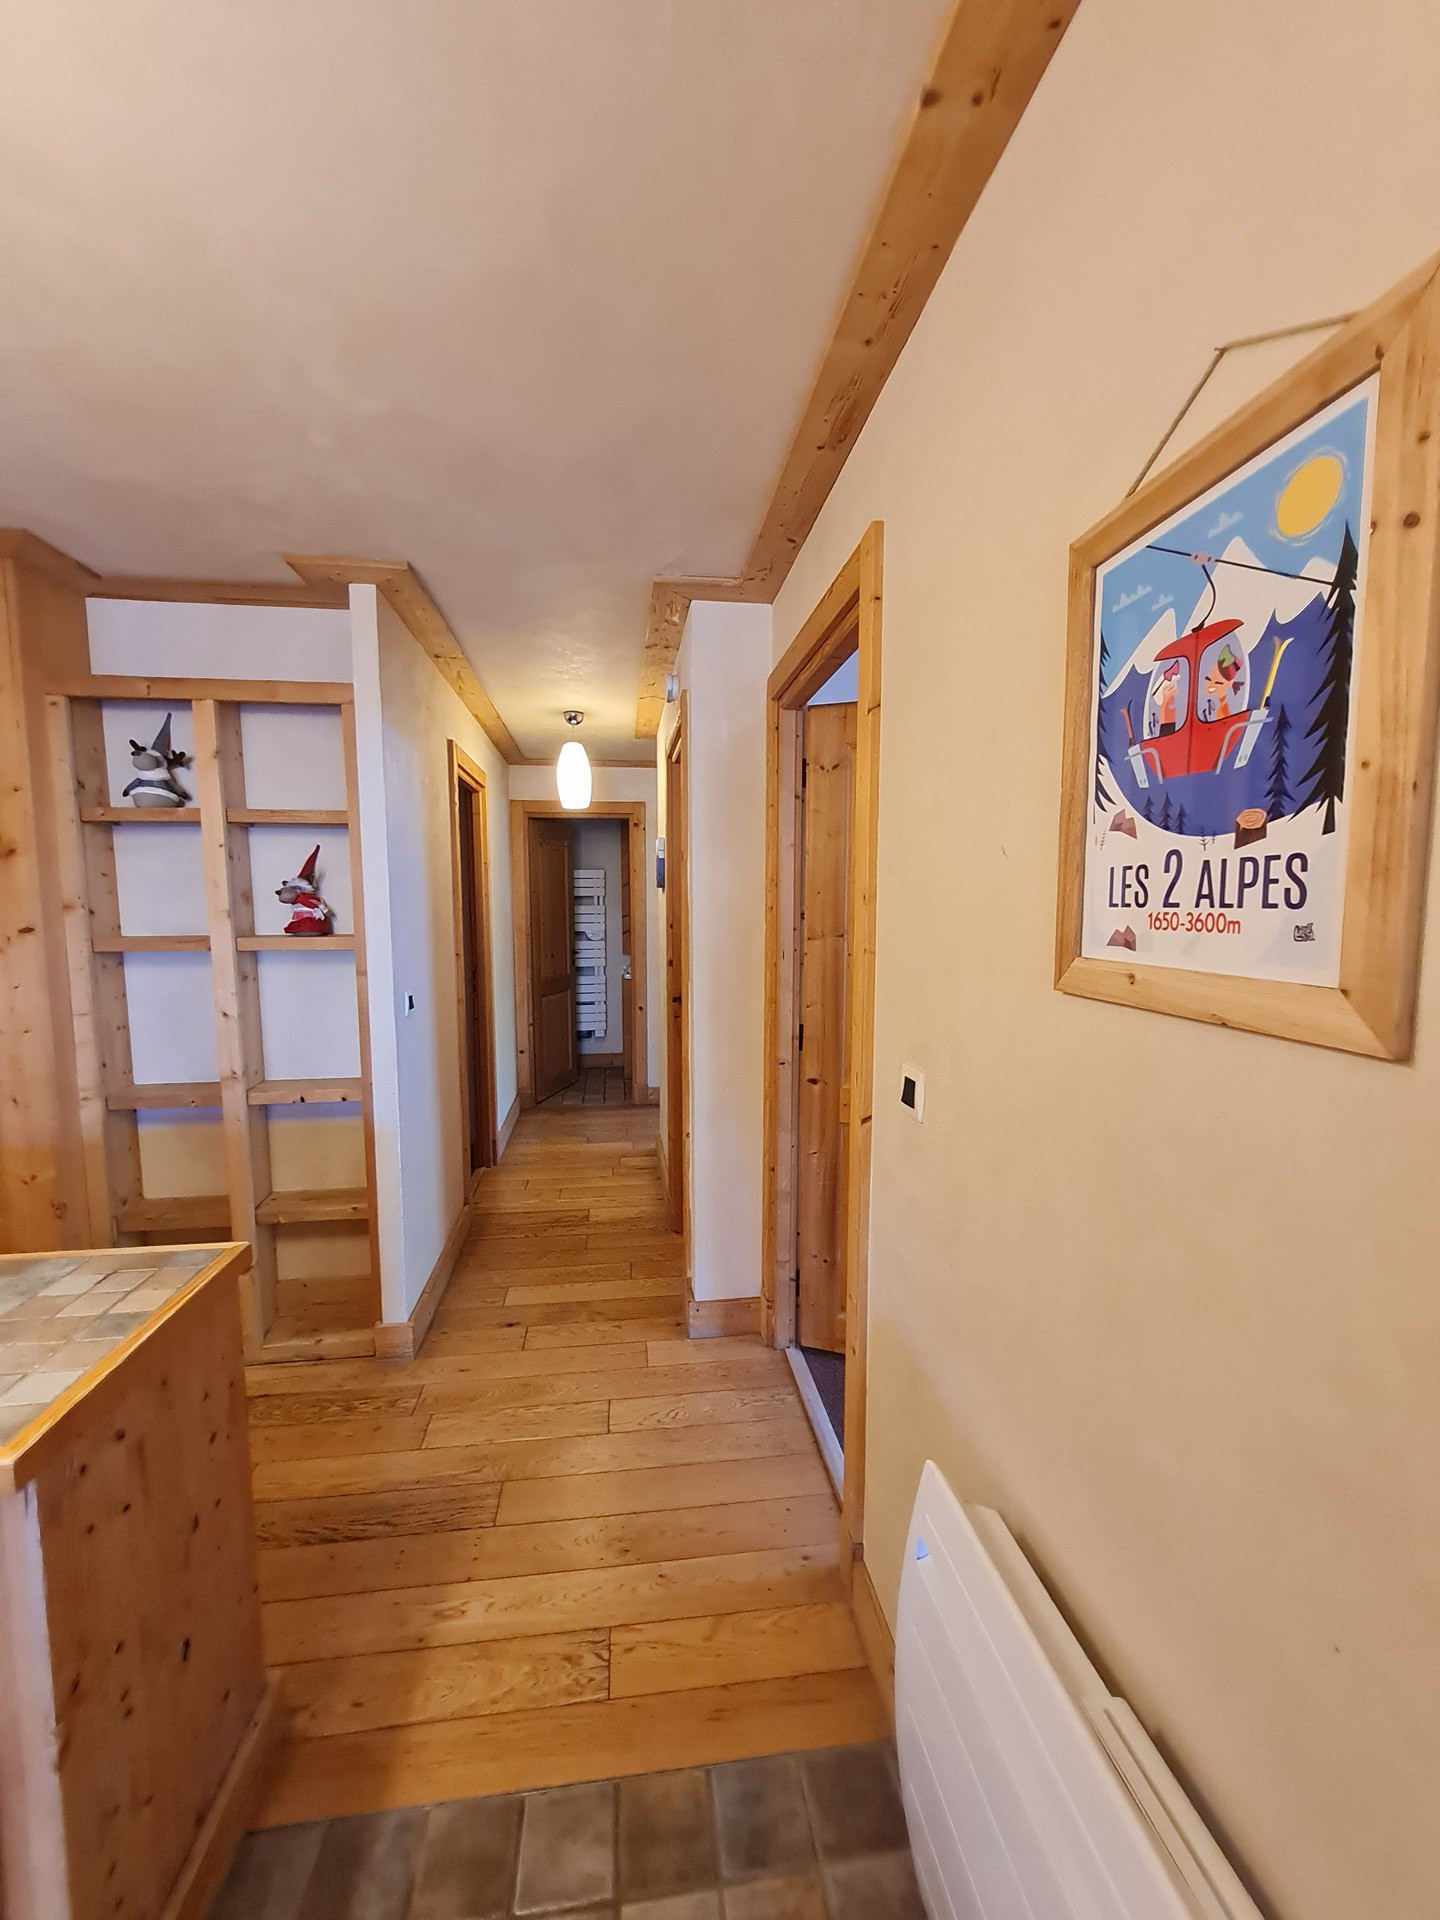 Appartement Cortina - 21 - Appt belle vue - 8 pers - Les Deux Alpes Venosc